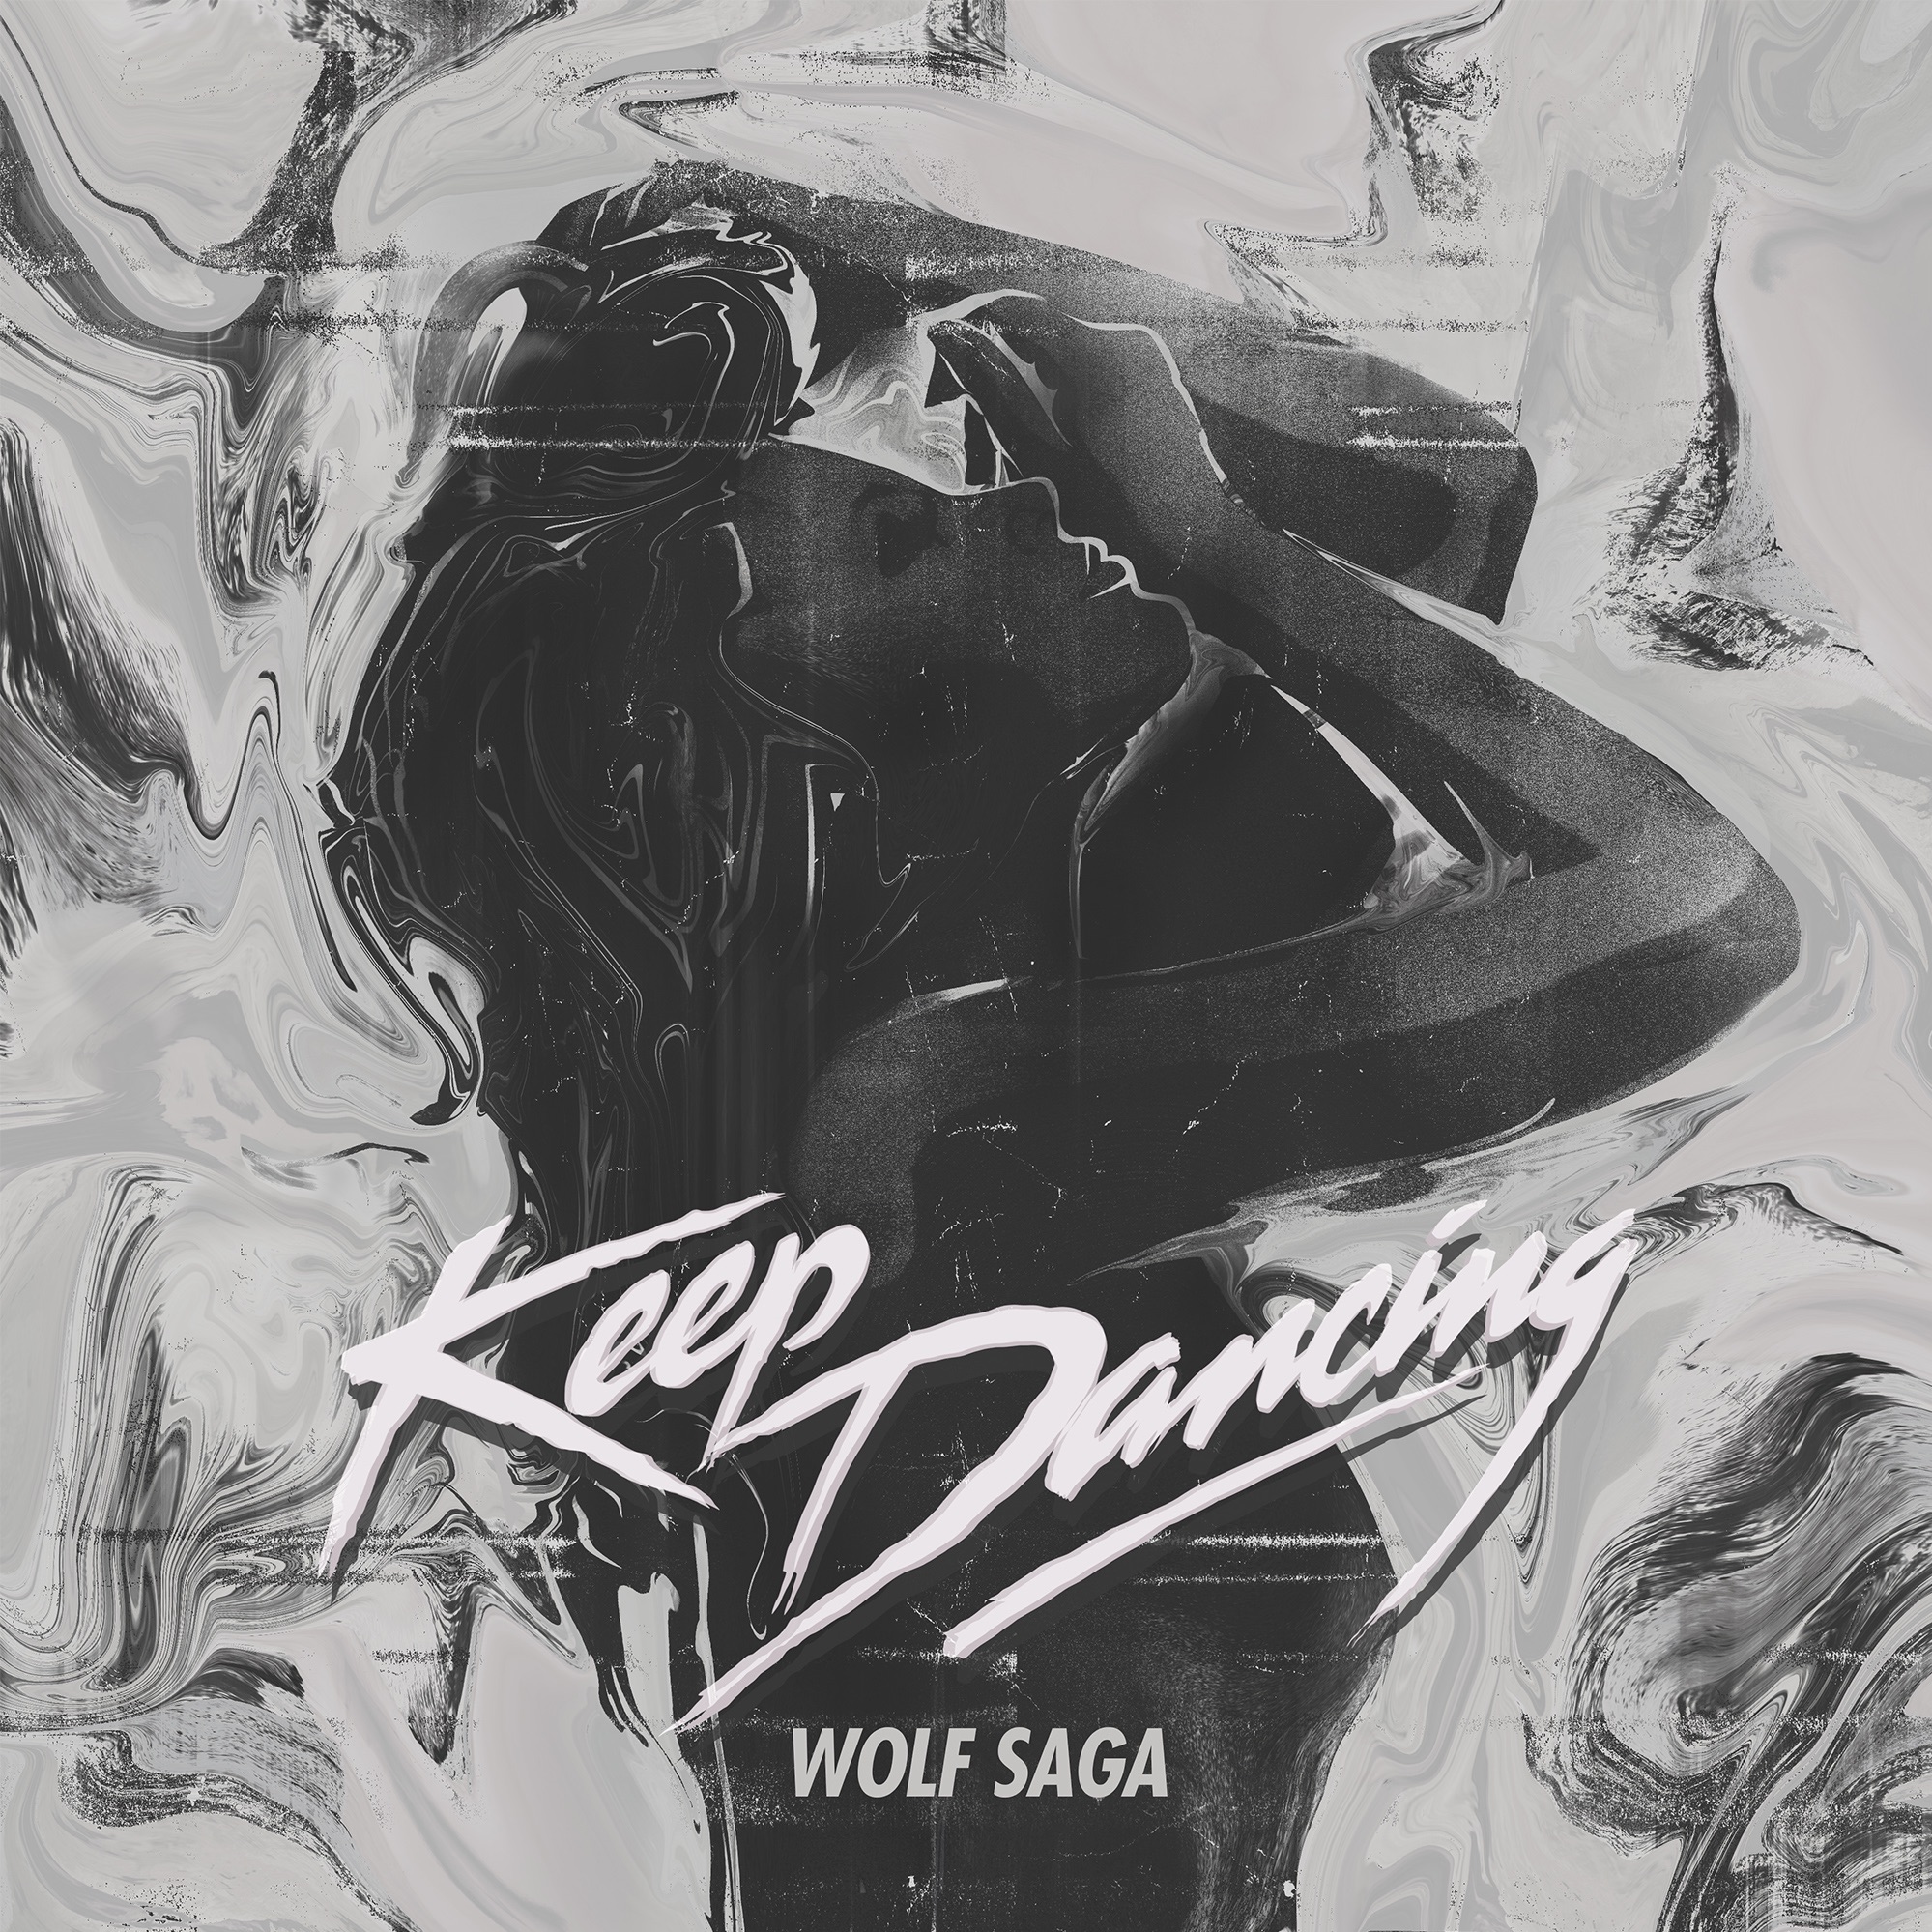 Wolf Saga – “Keep Dancing”